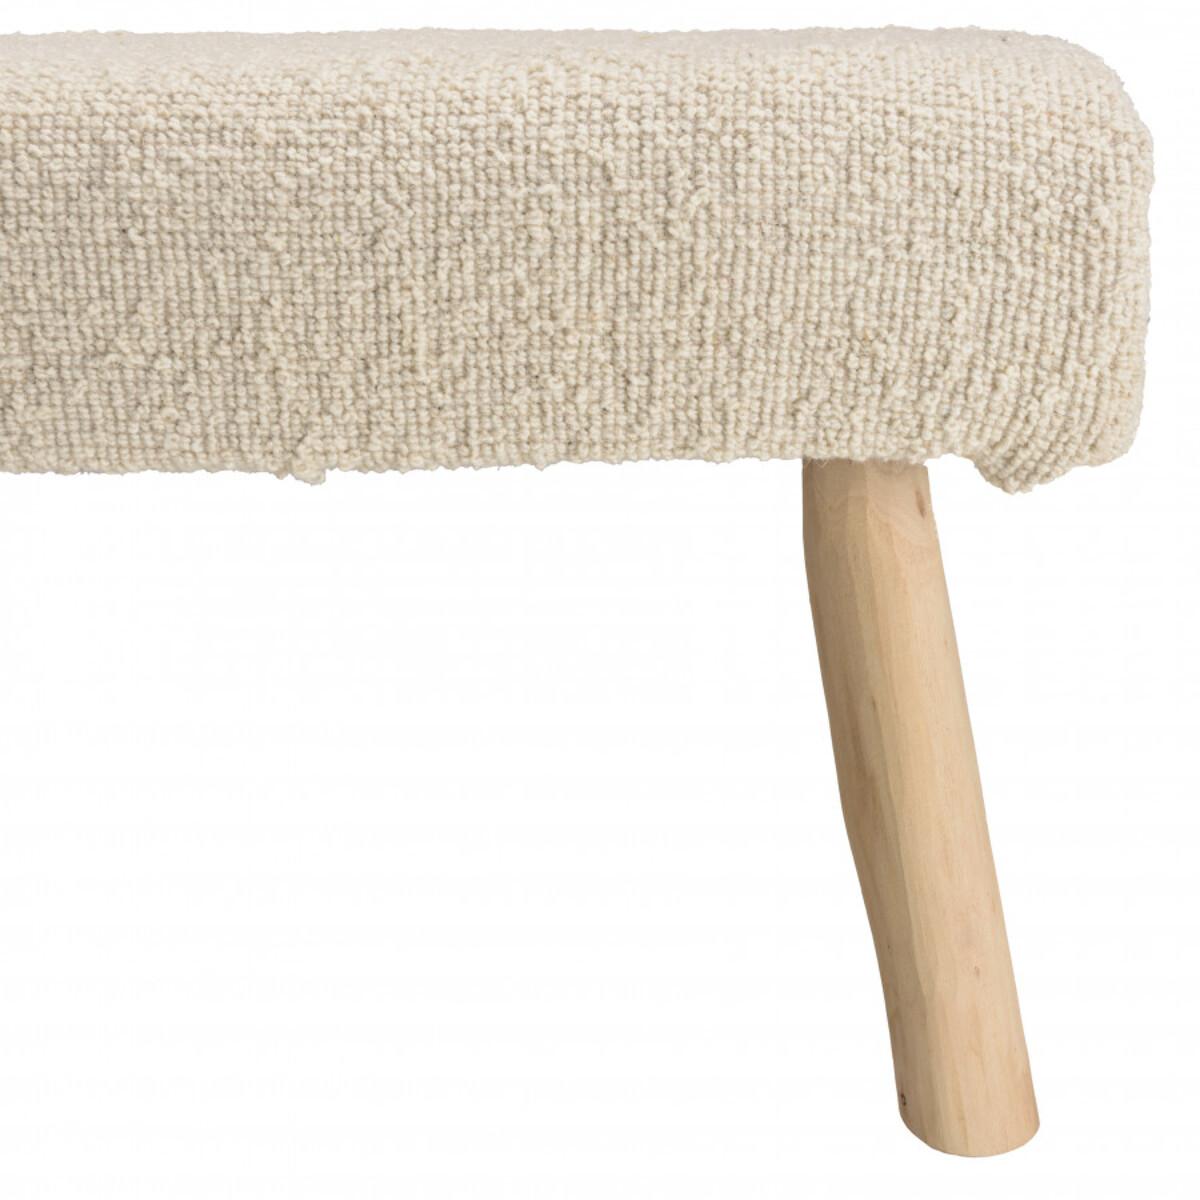 CHARLES - Banc 120x40cm en laine texturée ivoire pieds en bois naturel